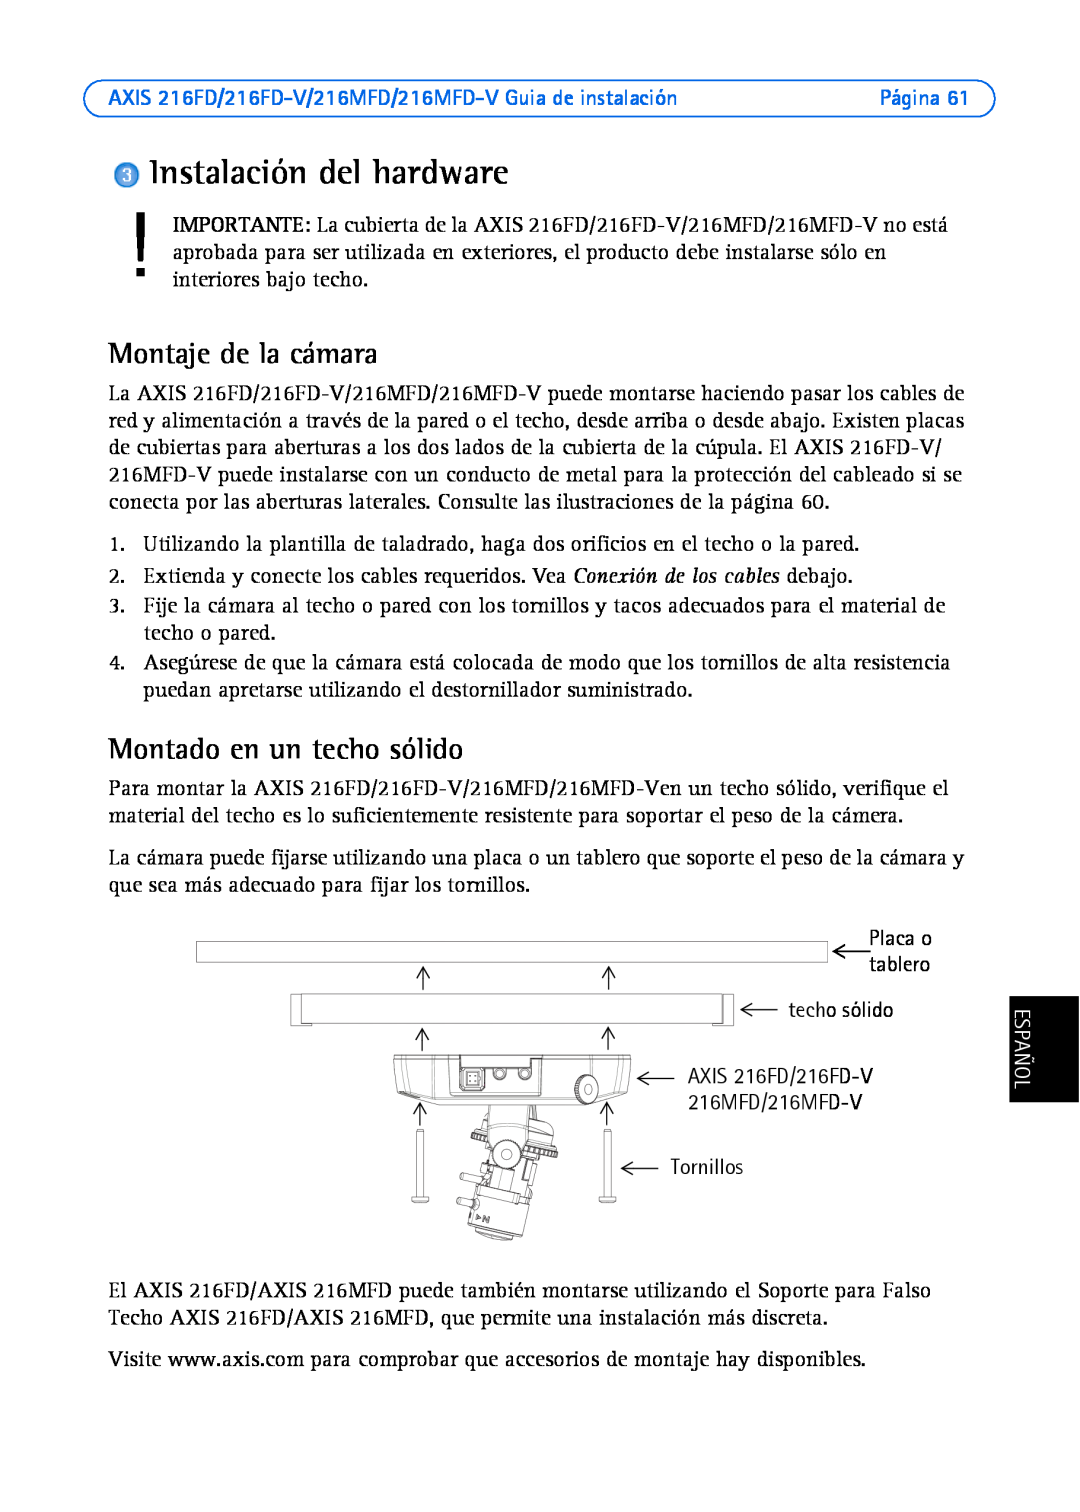 Axis Communications AXIS 216MFD manual Instalación del hardware, Montaje de la cámara, Montado en un techo sólido, Español 